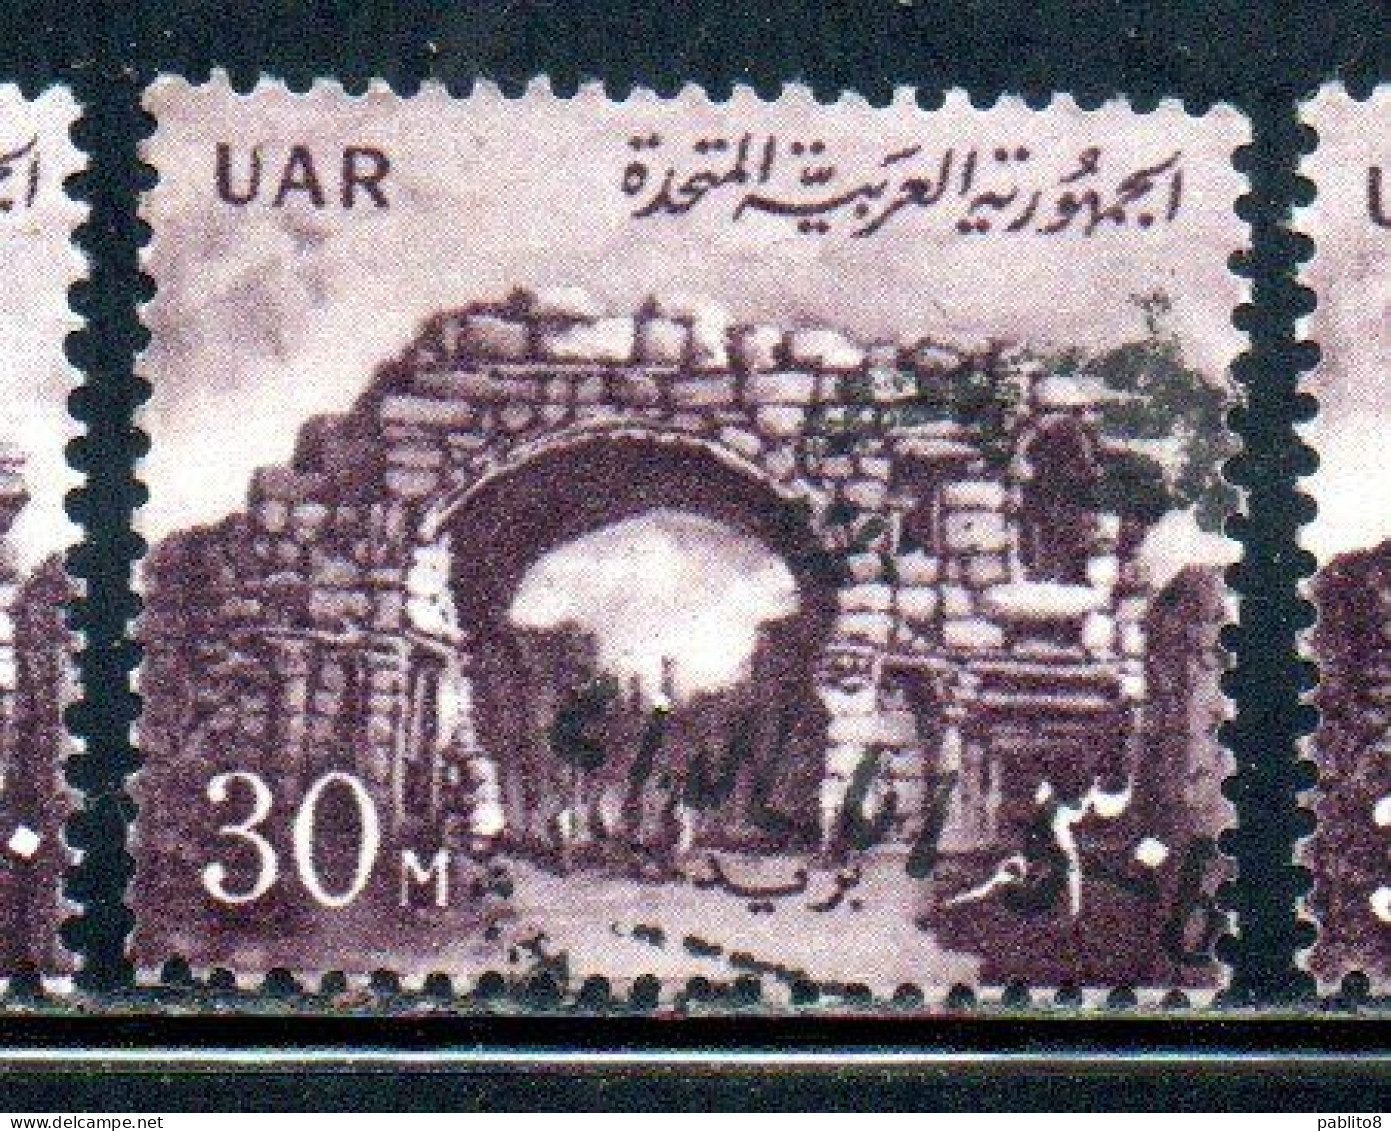 UAR EGYPT EGITTO 1959 1960 ST. SIMON'S GATE BOSRA SYRIA  30m MH - Nuovi